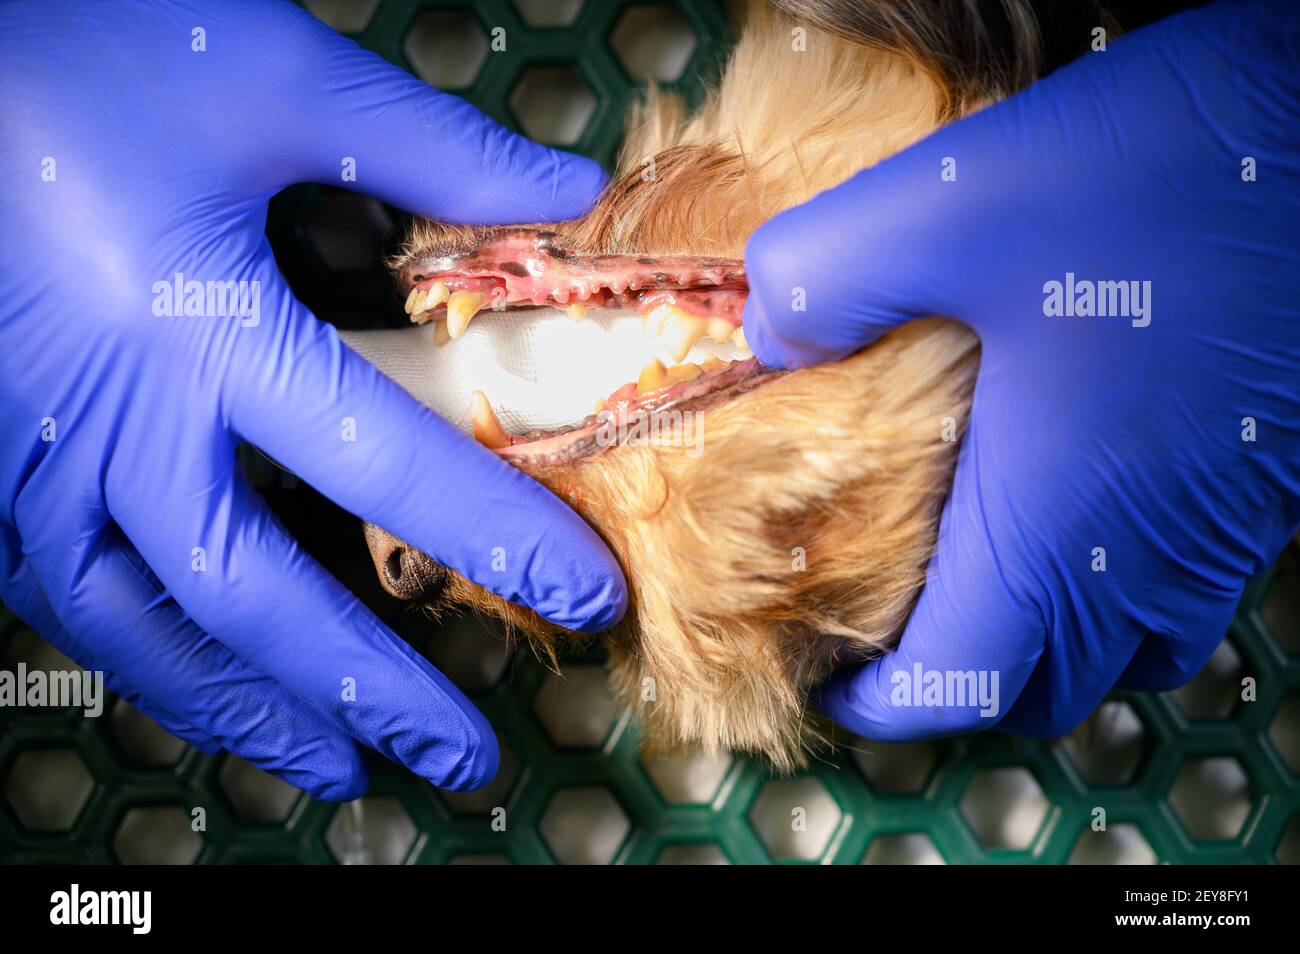 Odontología veterinaria. El cirujano dentista veterinario limpia y trata los dientes de un perro bajo anestesia en la mesa de operaciones en una clínica veterinaria. Foto de alta calidad Foto de stock